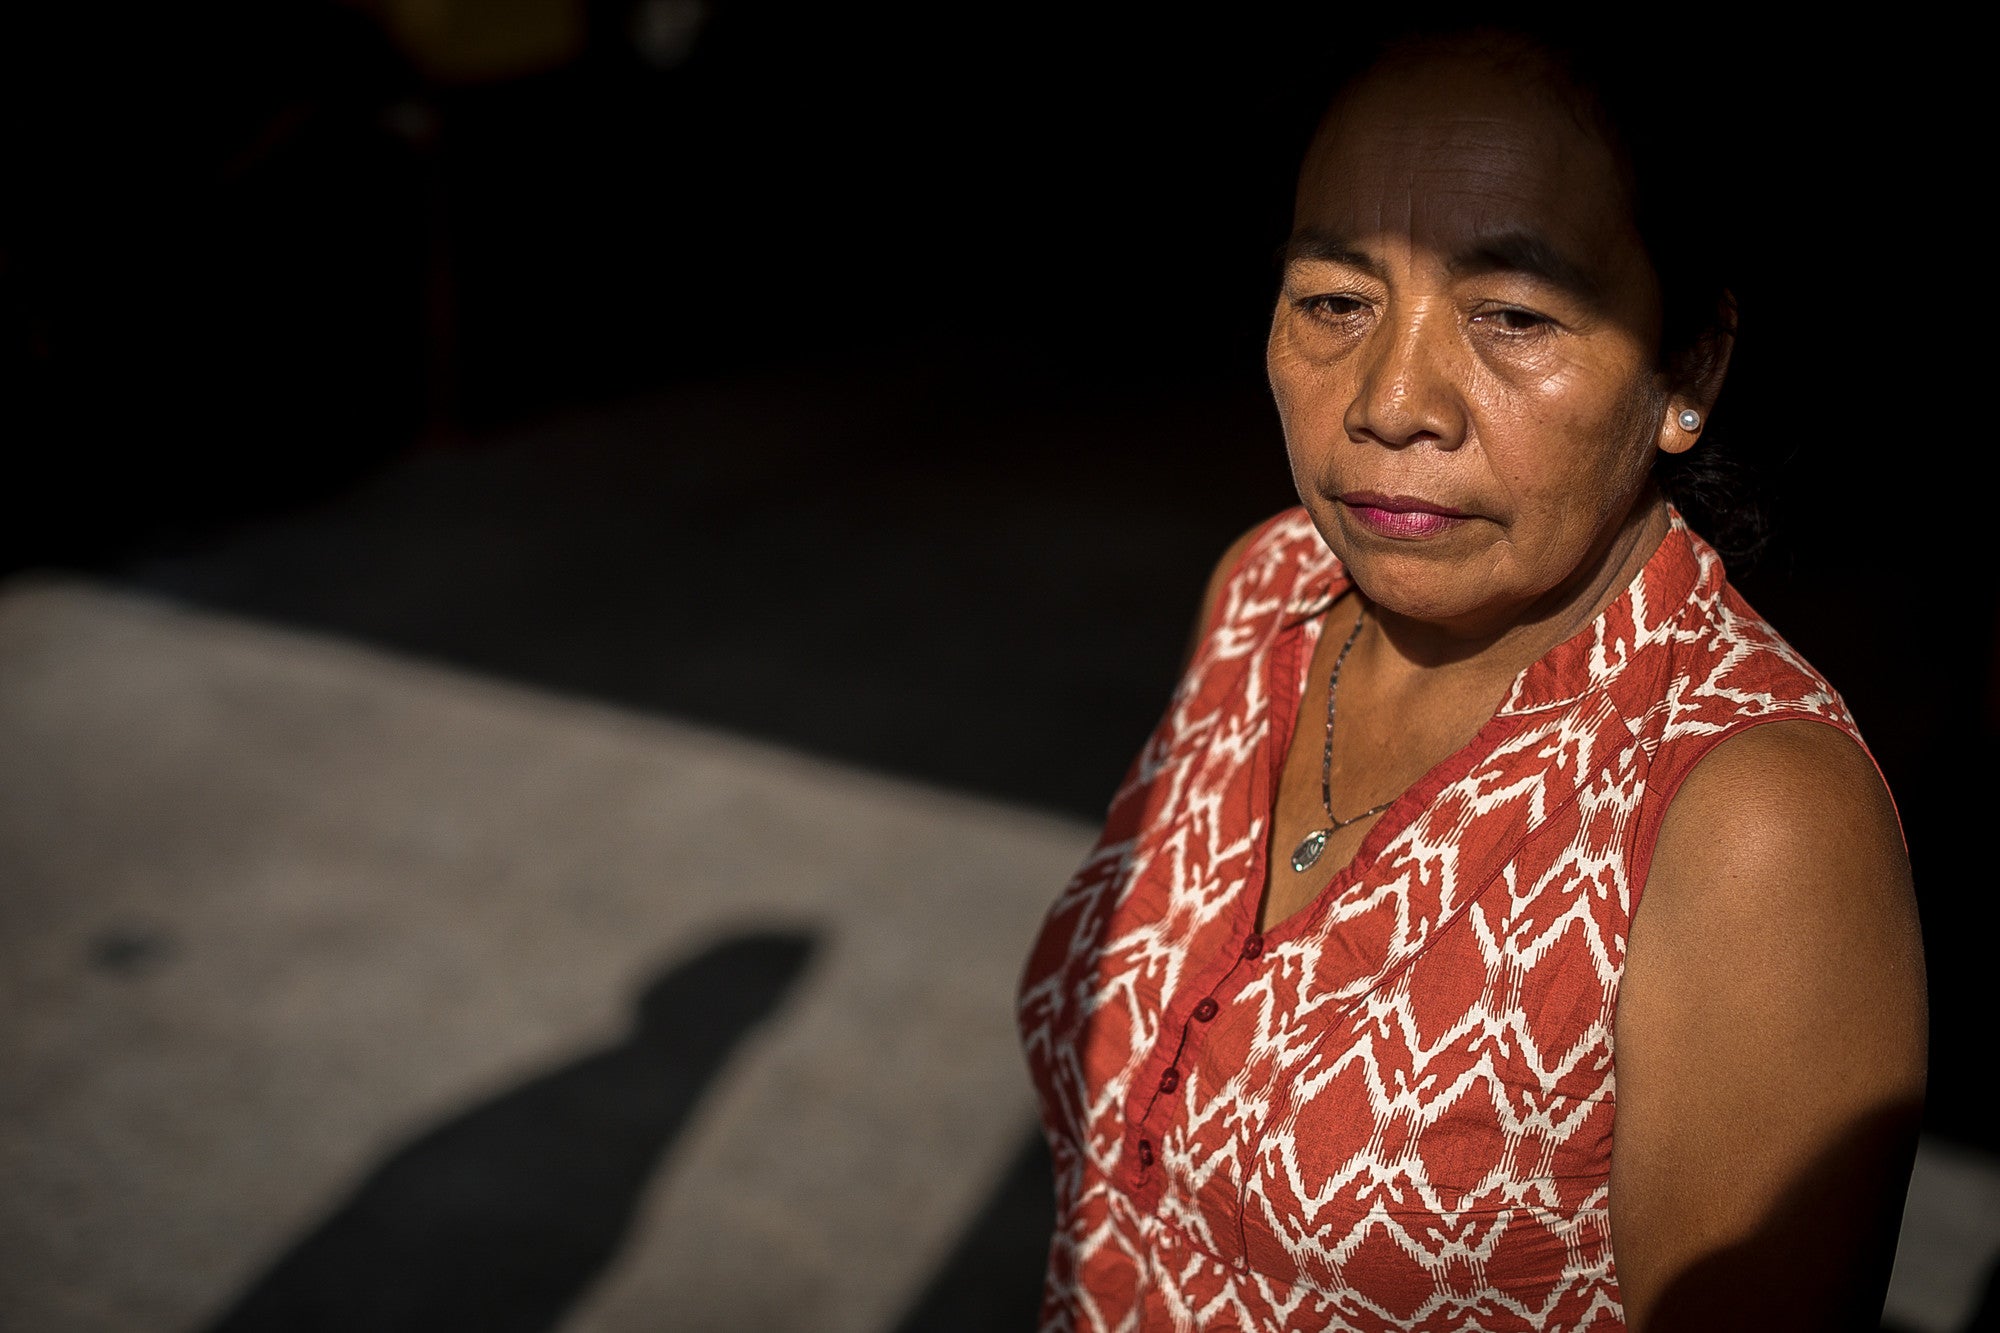 Maria Faustina a été photographiée à Guatemala City le 13 avril 2018, dans le cadre de la campagne des travailleurs domestiques de CARE. Elle attend avec impatience dans une pièce sombre.